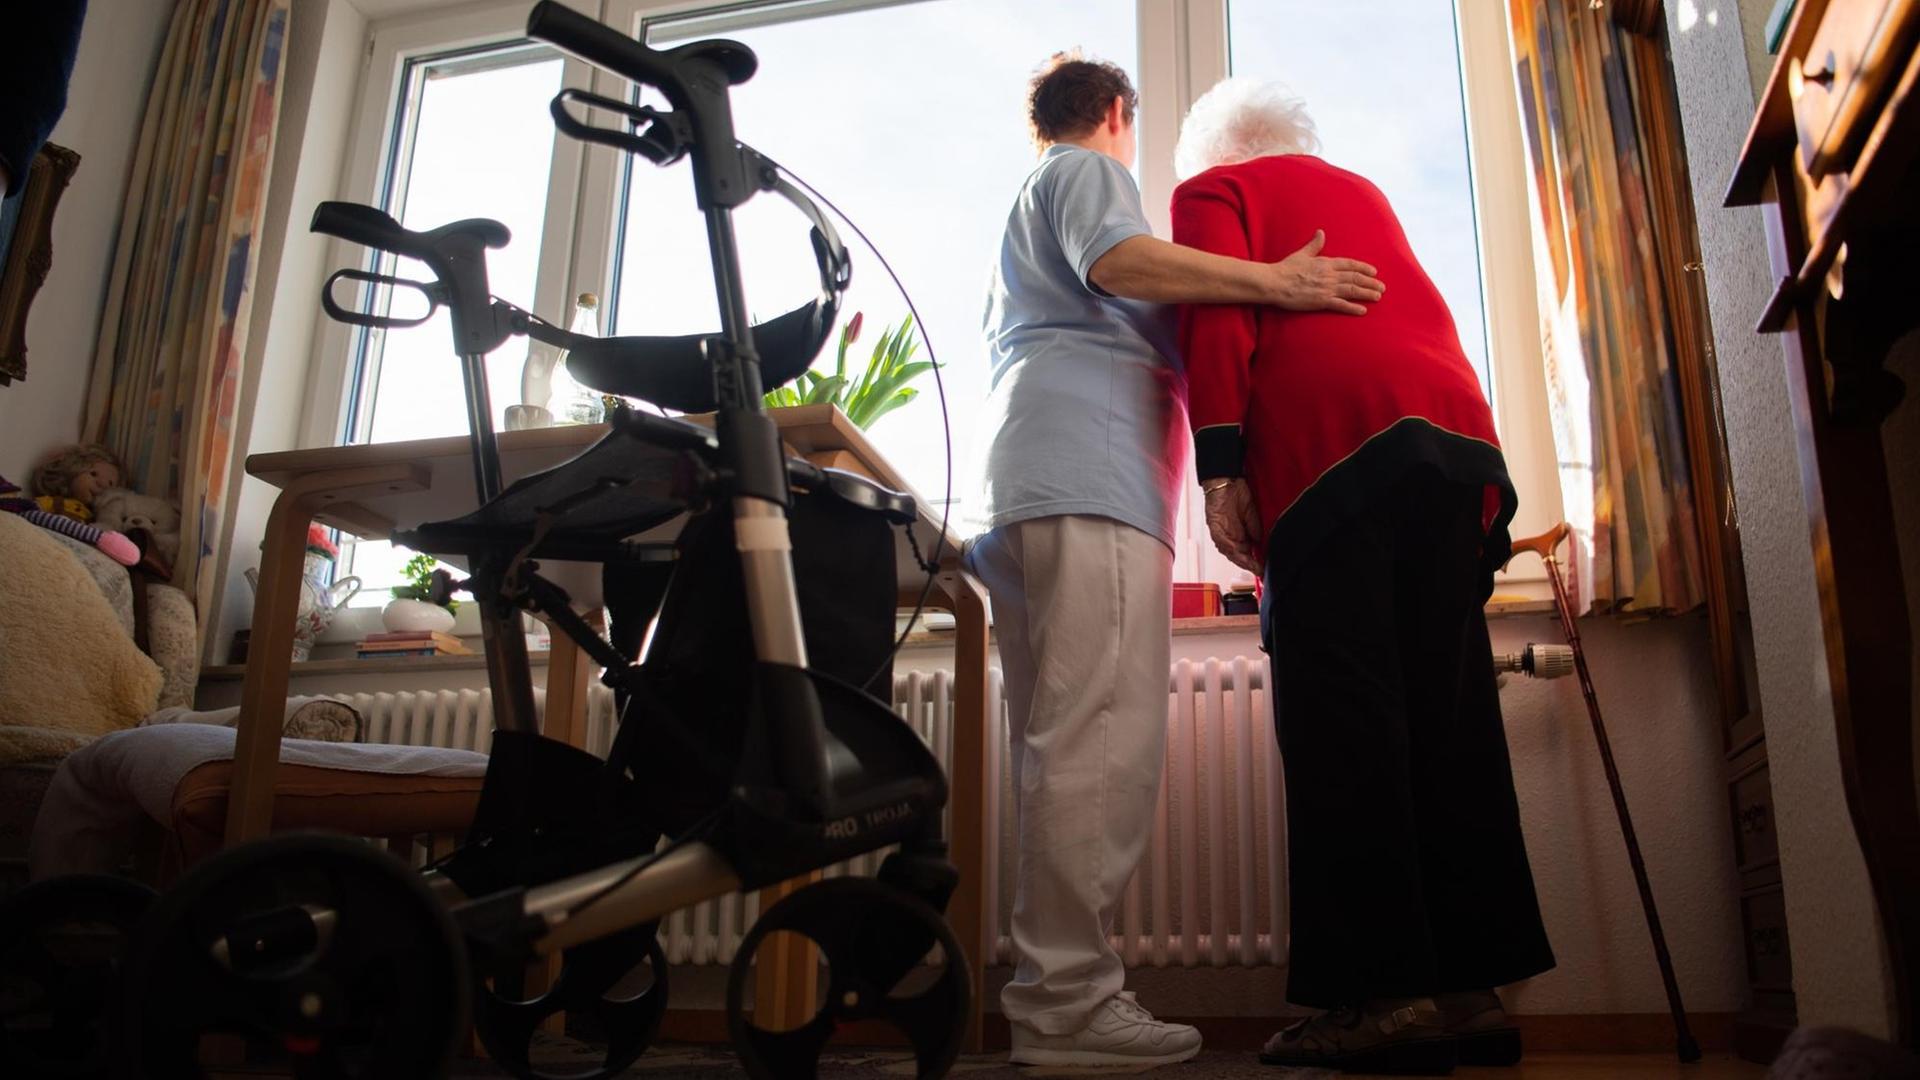 Baden-Württemberg, Böblingen: Eine Pflegerin (l.) und eine Bewohnerin des Pflegeheims schauen zusammen aus einem Fenster im Wohnbereich des Pflegeheims. Im Vordergrund steht ein Rollator